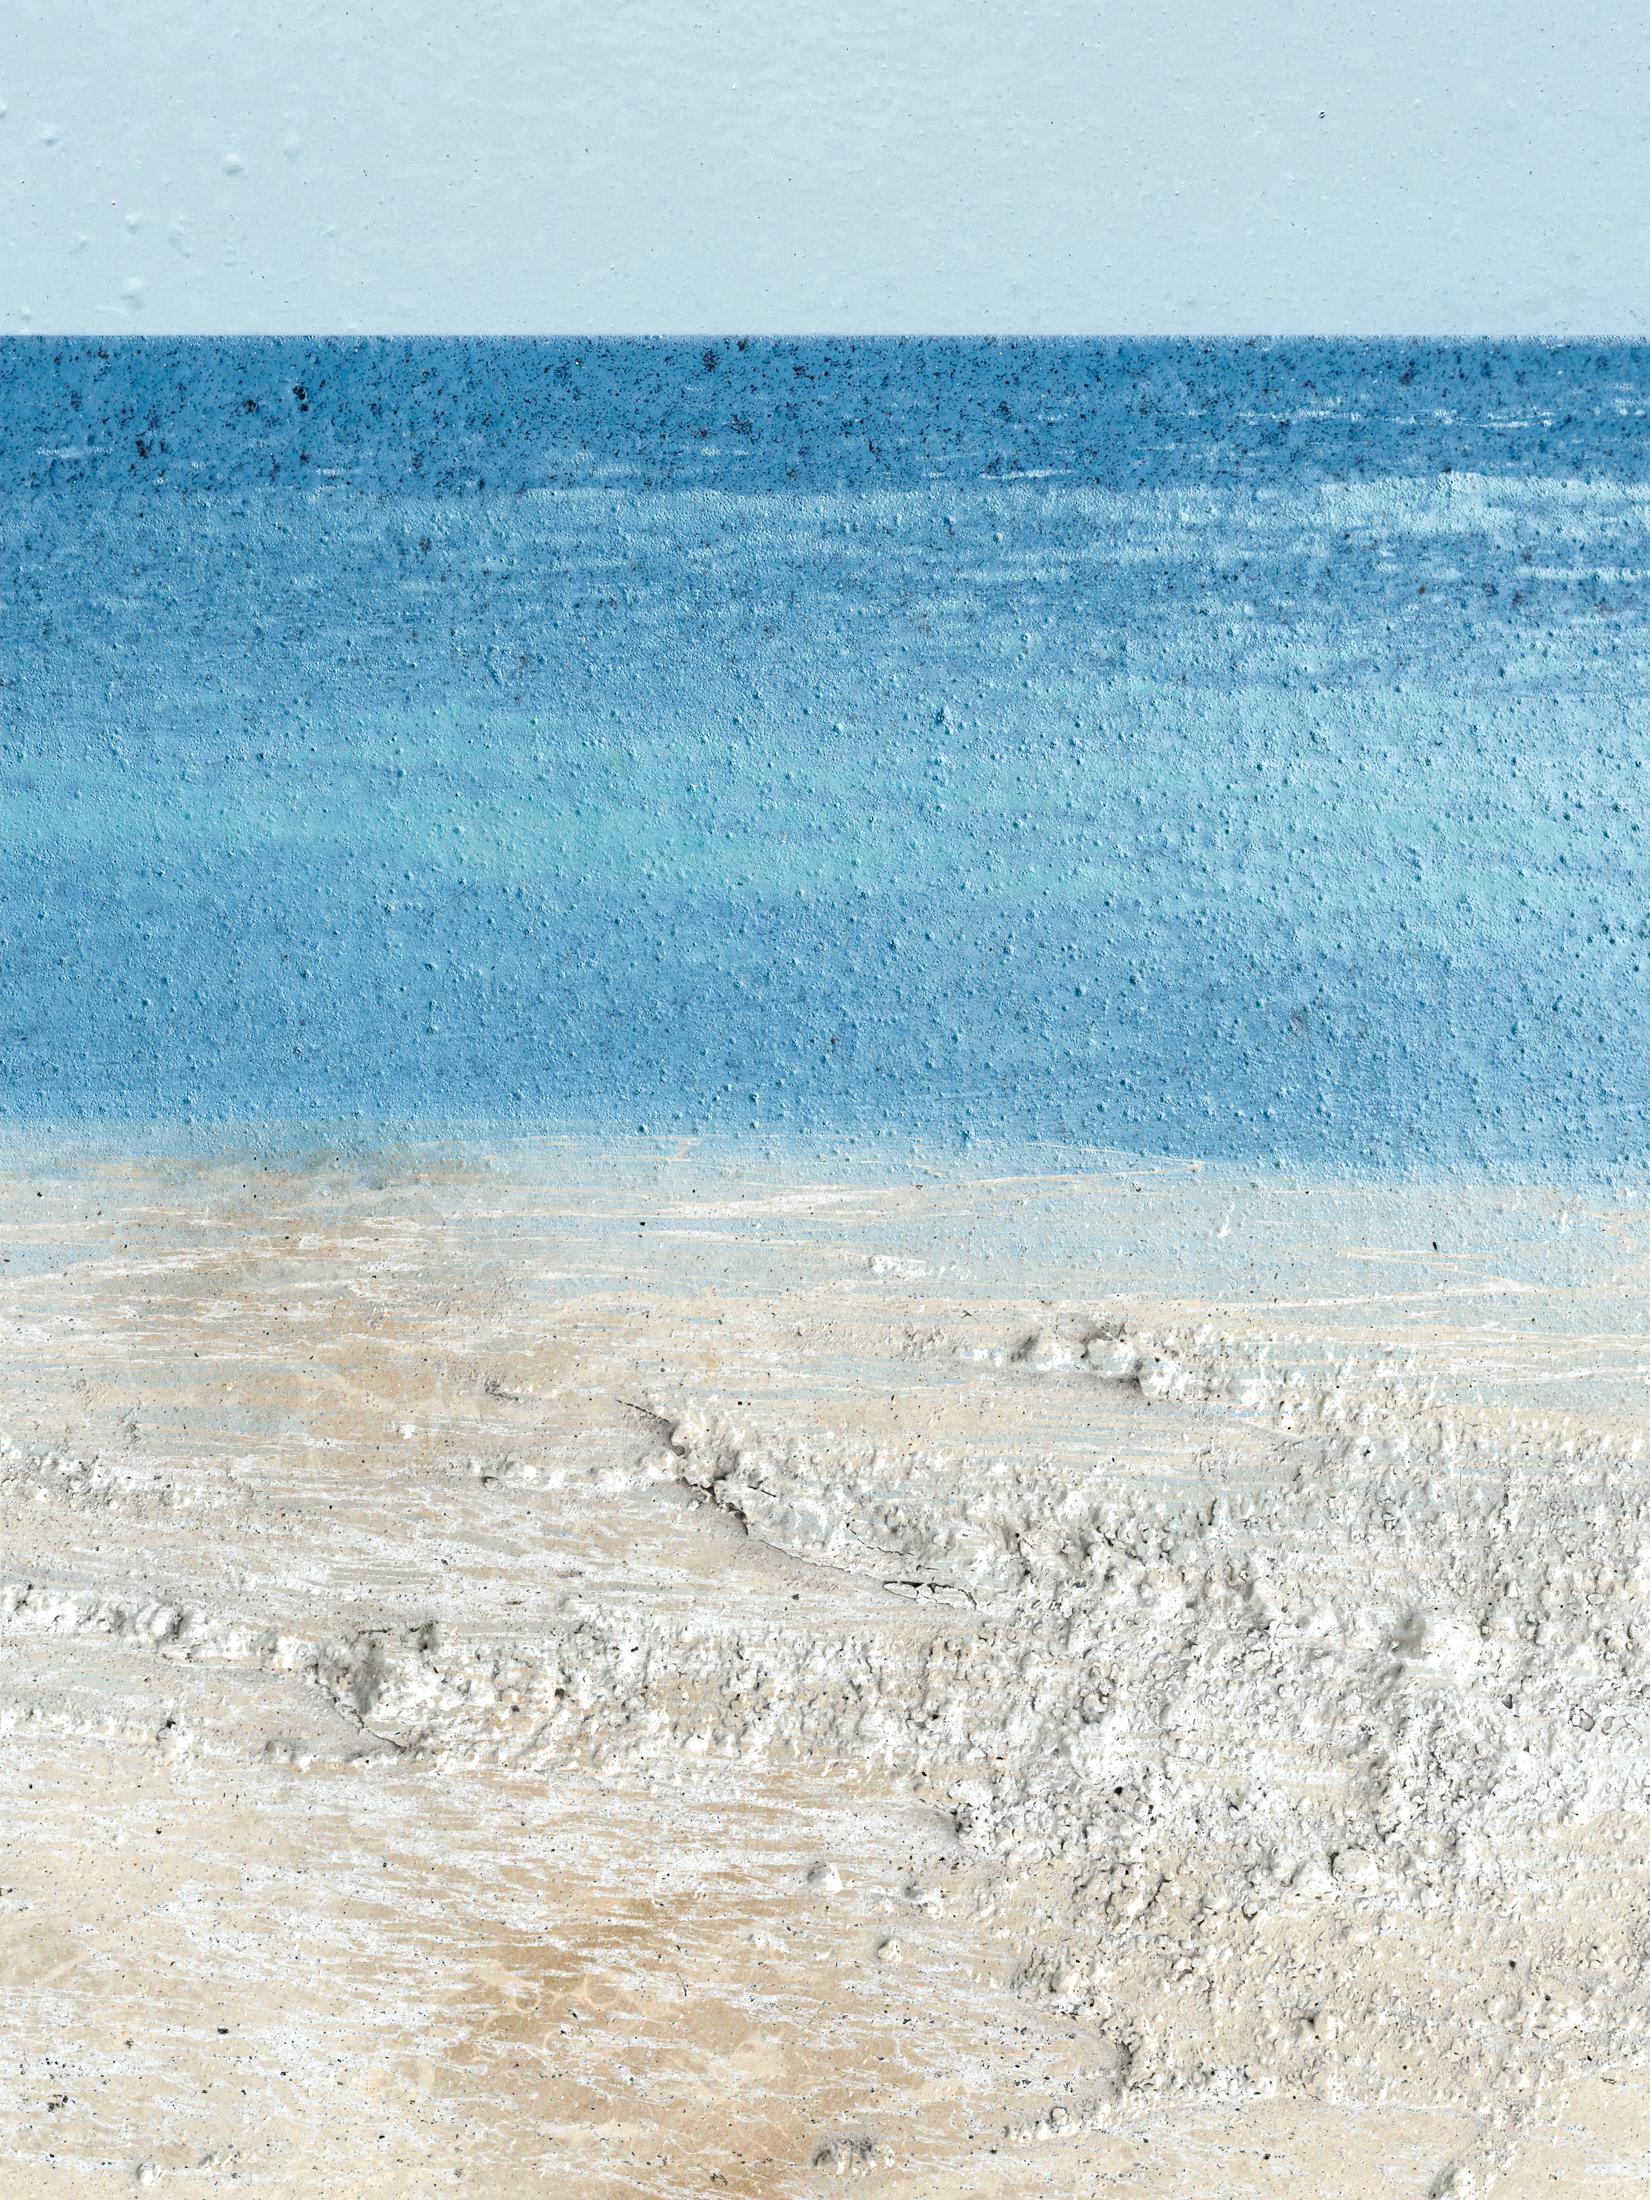 Landscape Photograph Jennifer McKinnon - Produit non contenant : pierres de lait de plage - photo composite, paysage de plage